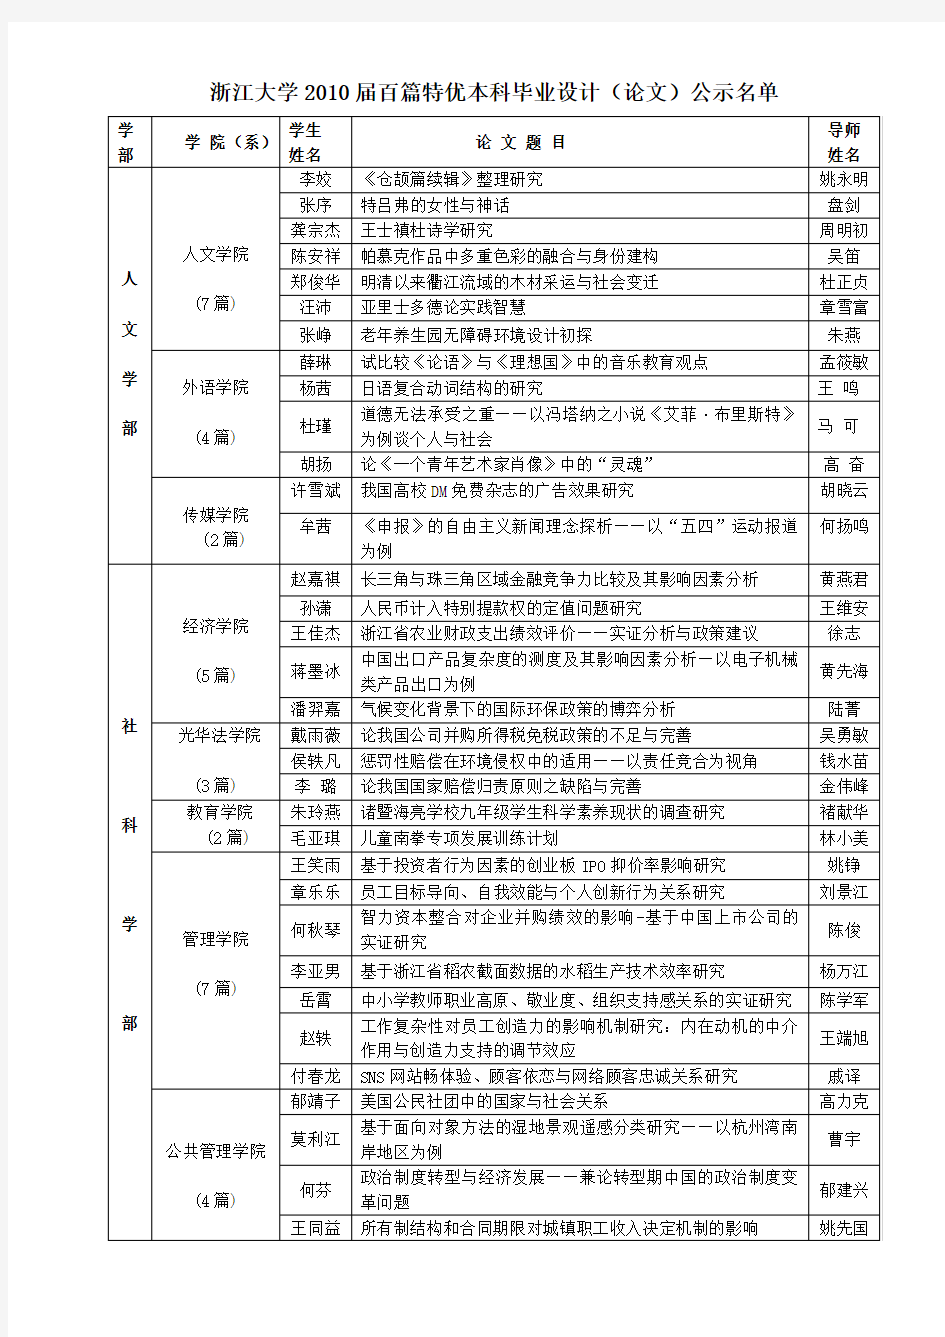 浙江大学2010届百篇特优本科毕业设计(论文)公示名单